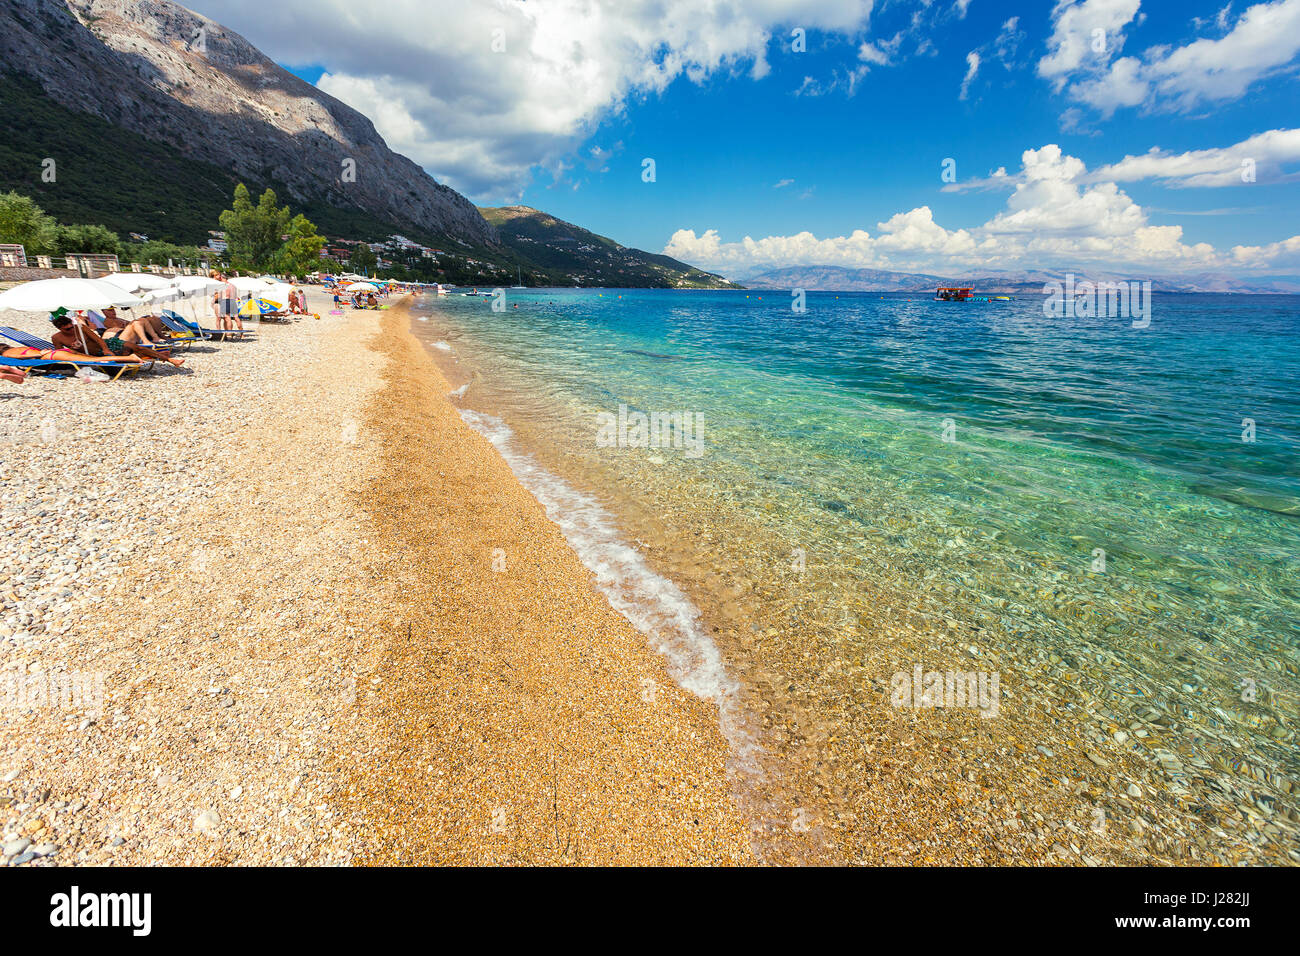 Corfu, Greece -August 20, 2015: Beautiful beach in Barbati on Corfu, tourists enjoying a nice summer day at the beach. Kerkyra (Corfu), Greece Stock Photo